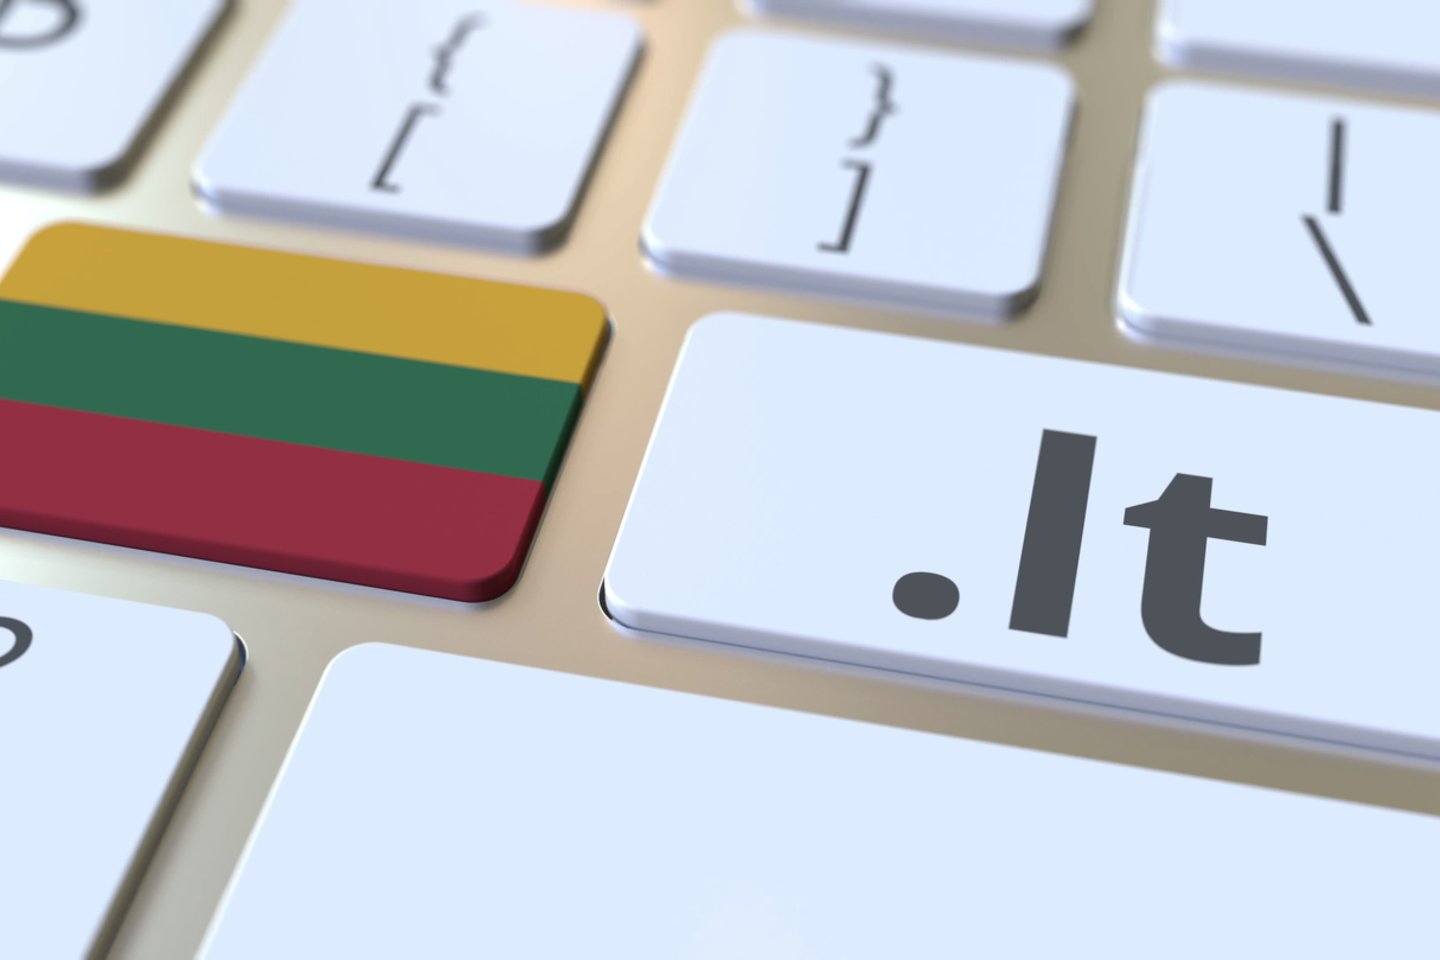  Gražiausio lietuviško interneto vardo konkursą šiais metais laimėjo domenas jūrė.lt, surinkęs daugiausiai internautų balsų.<br> 123rf iliustr.